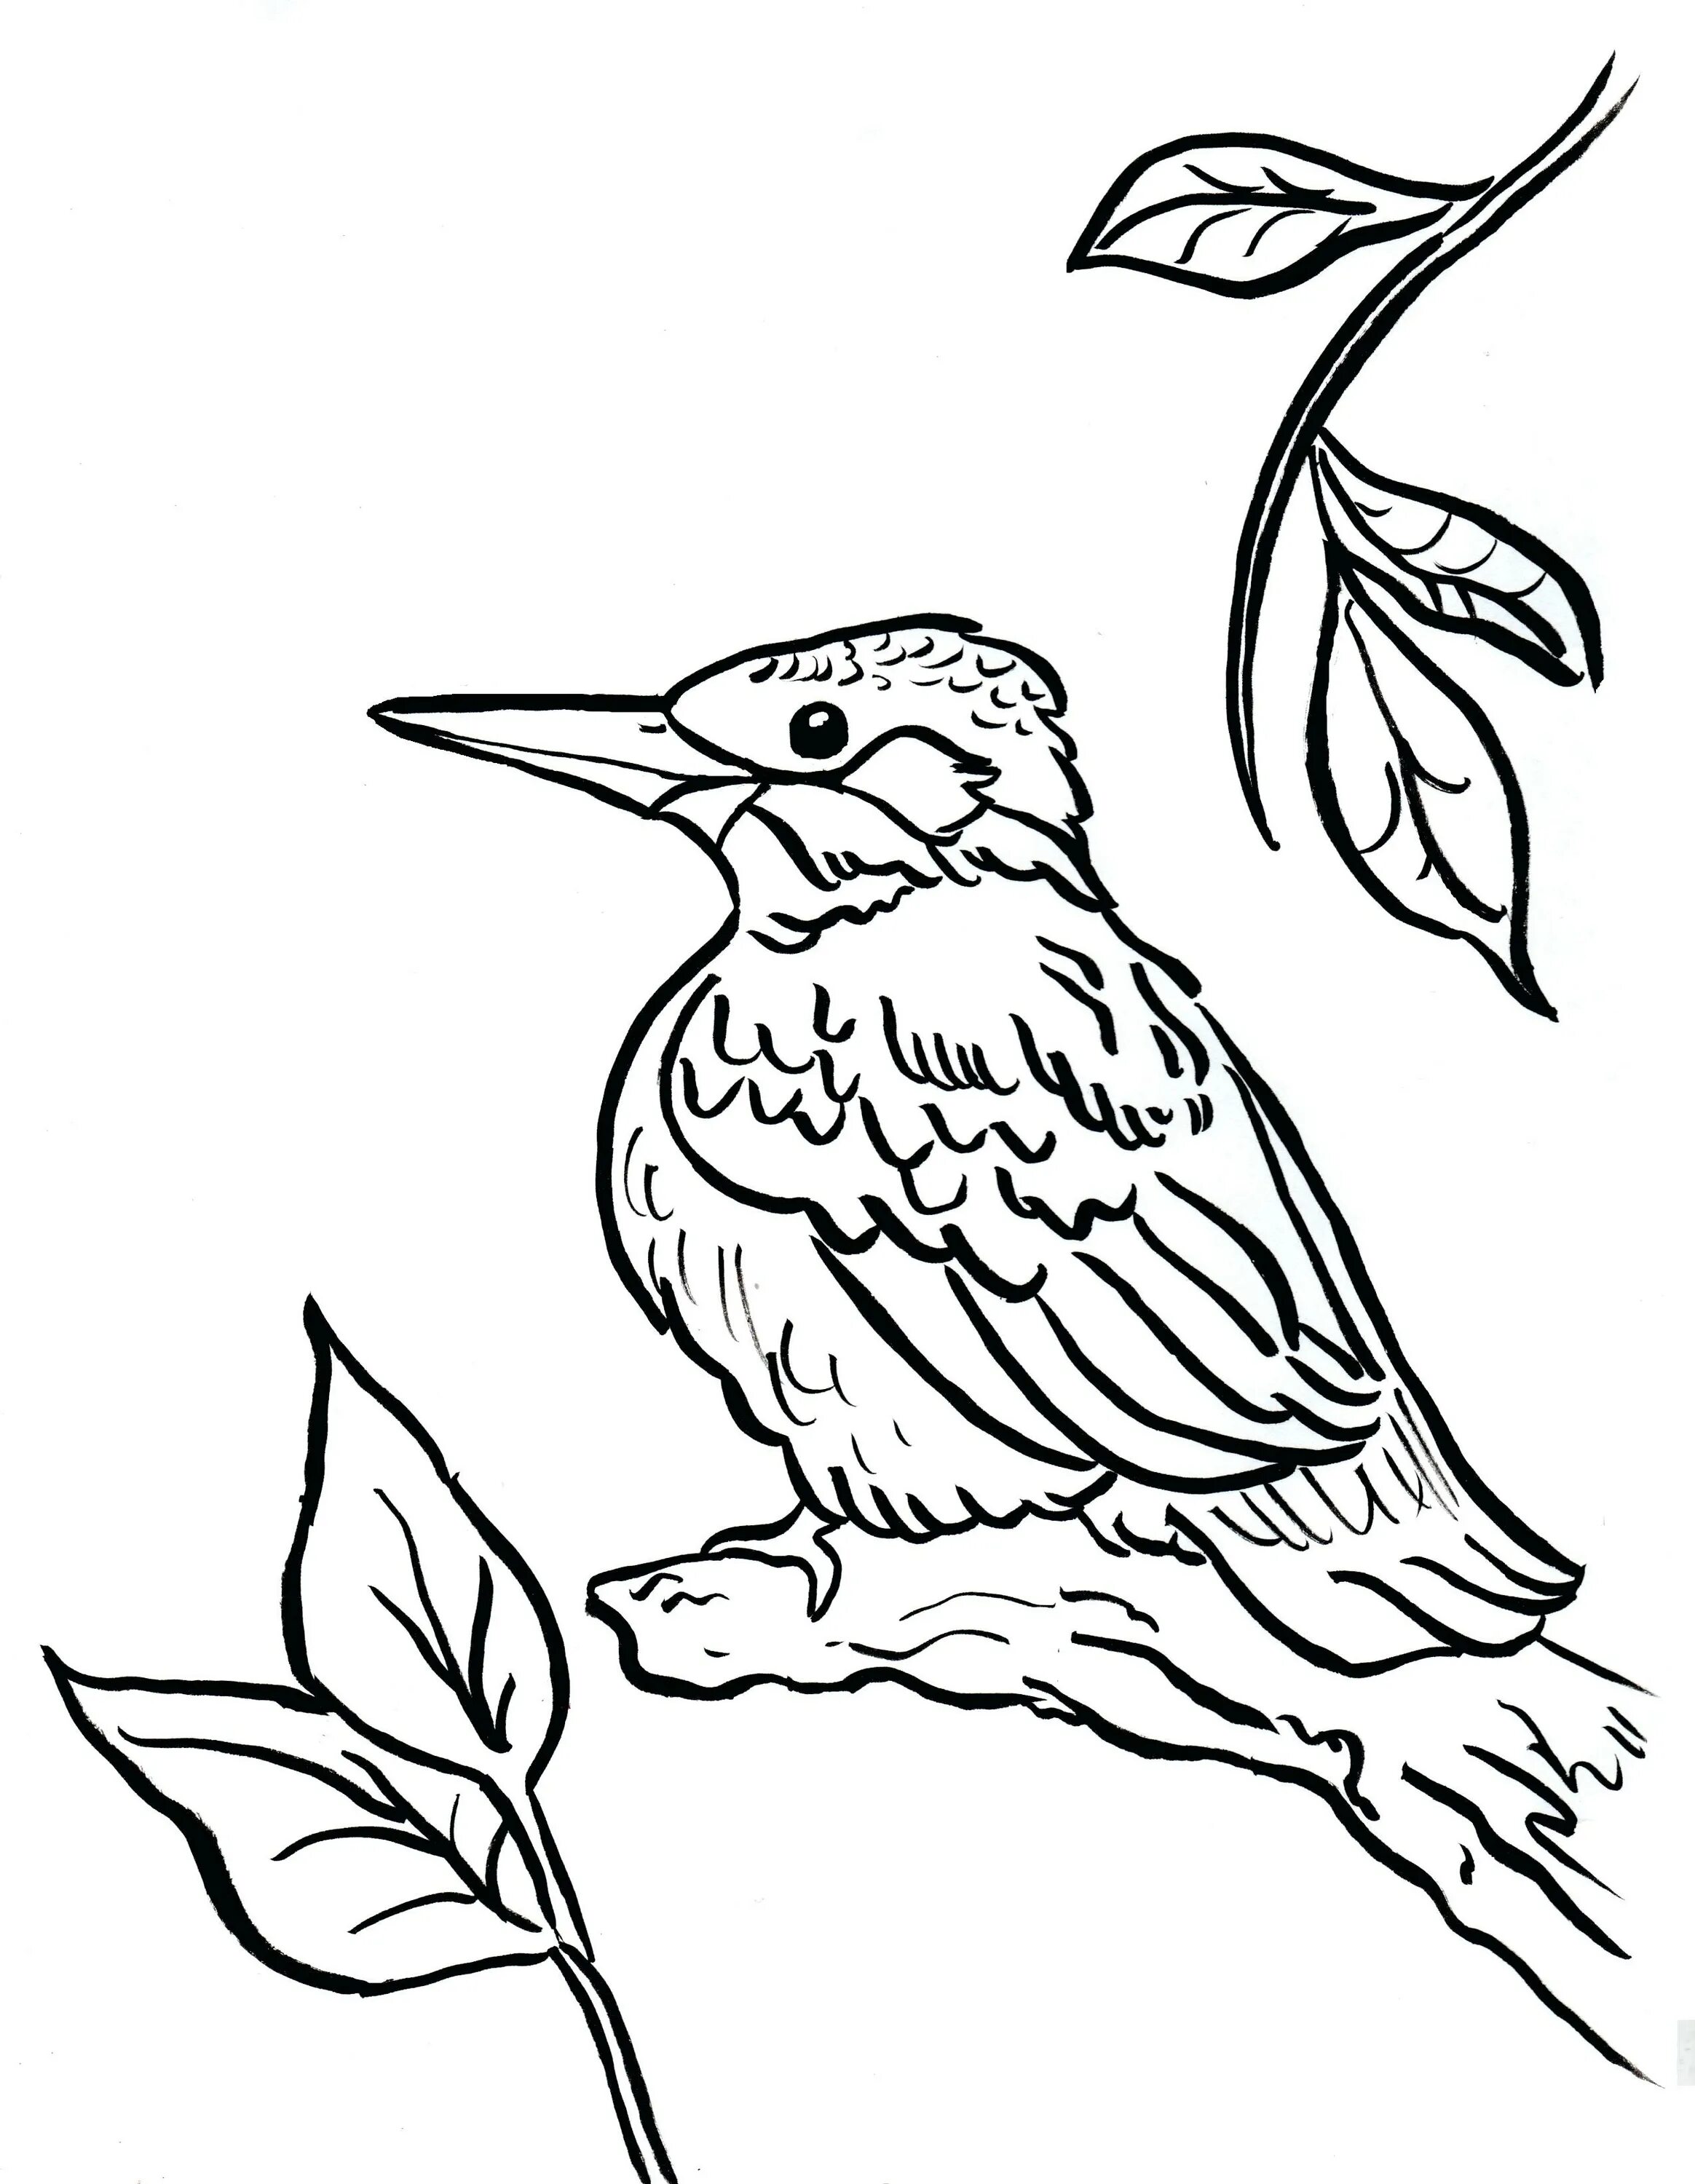 Kingfisher #2